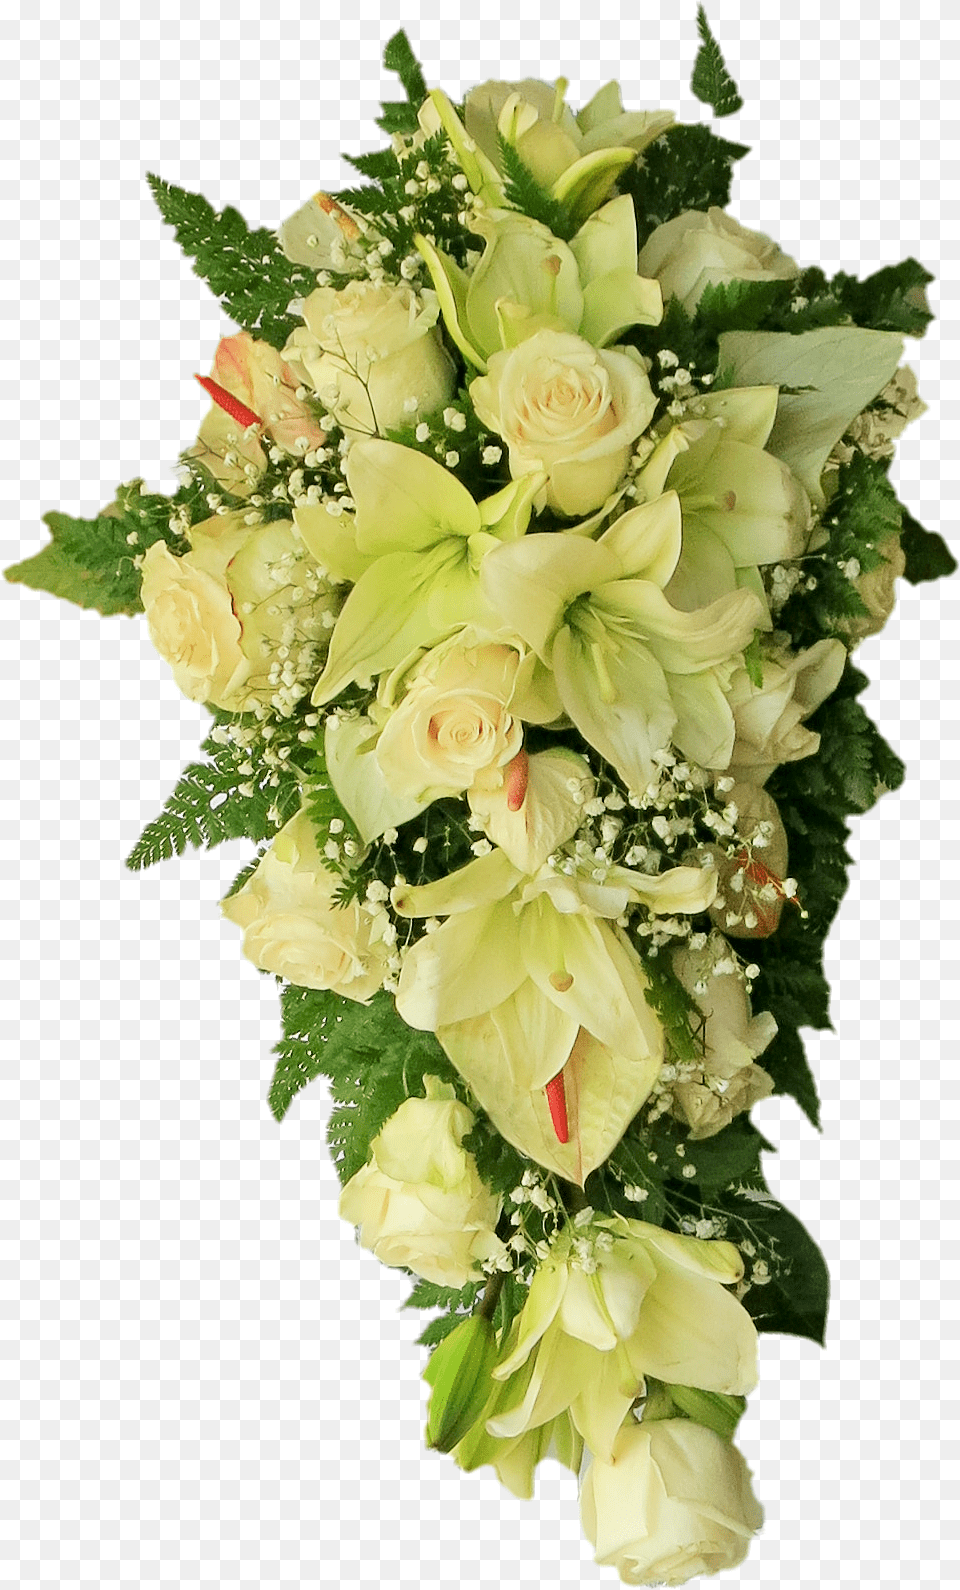 White Flowers Bouquet Flowers Bouquet White Transparent, Art, Floral Design, Flower, Flower Arrangement Free Png